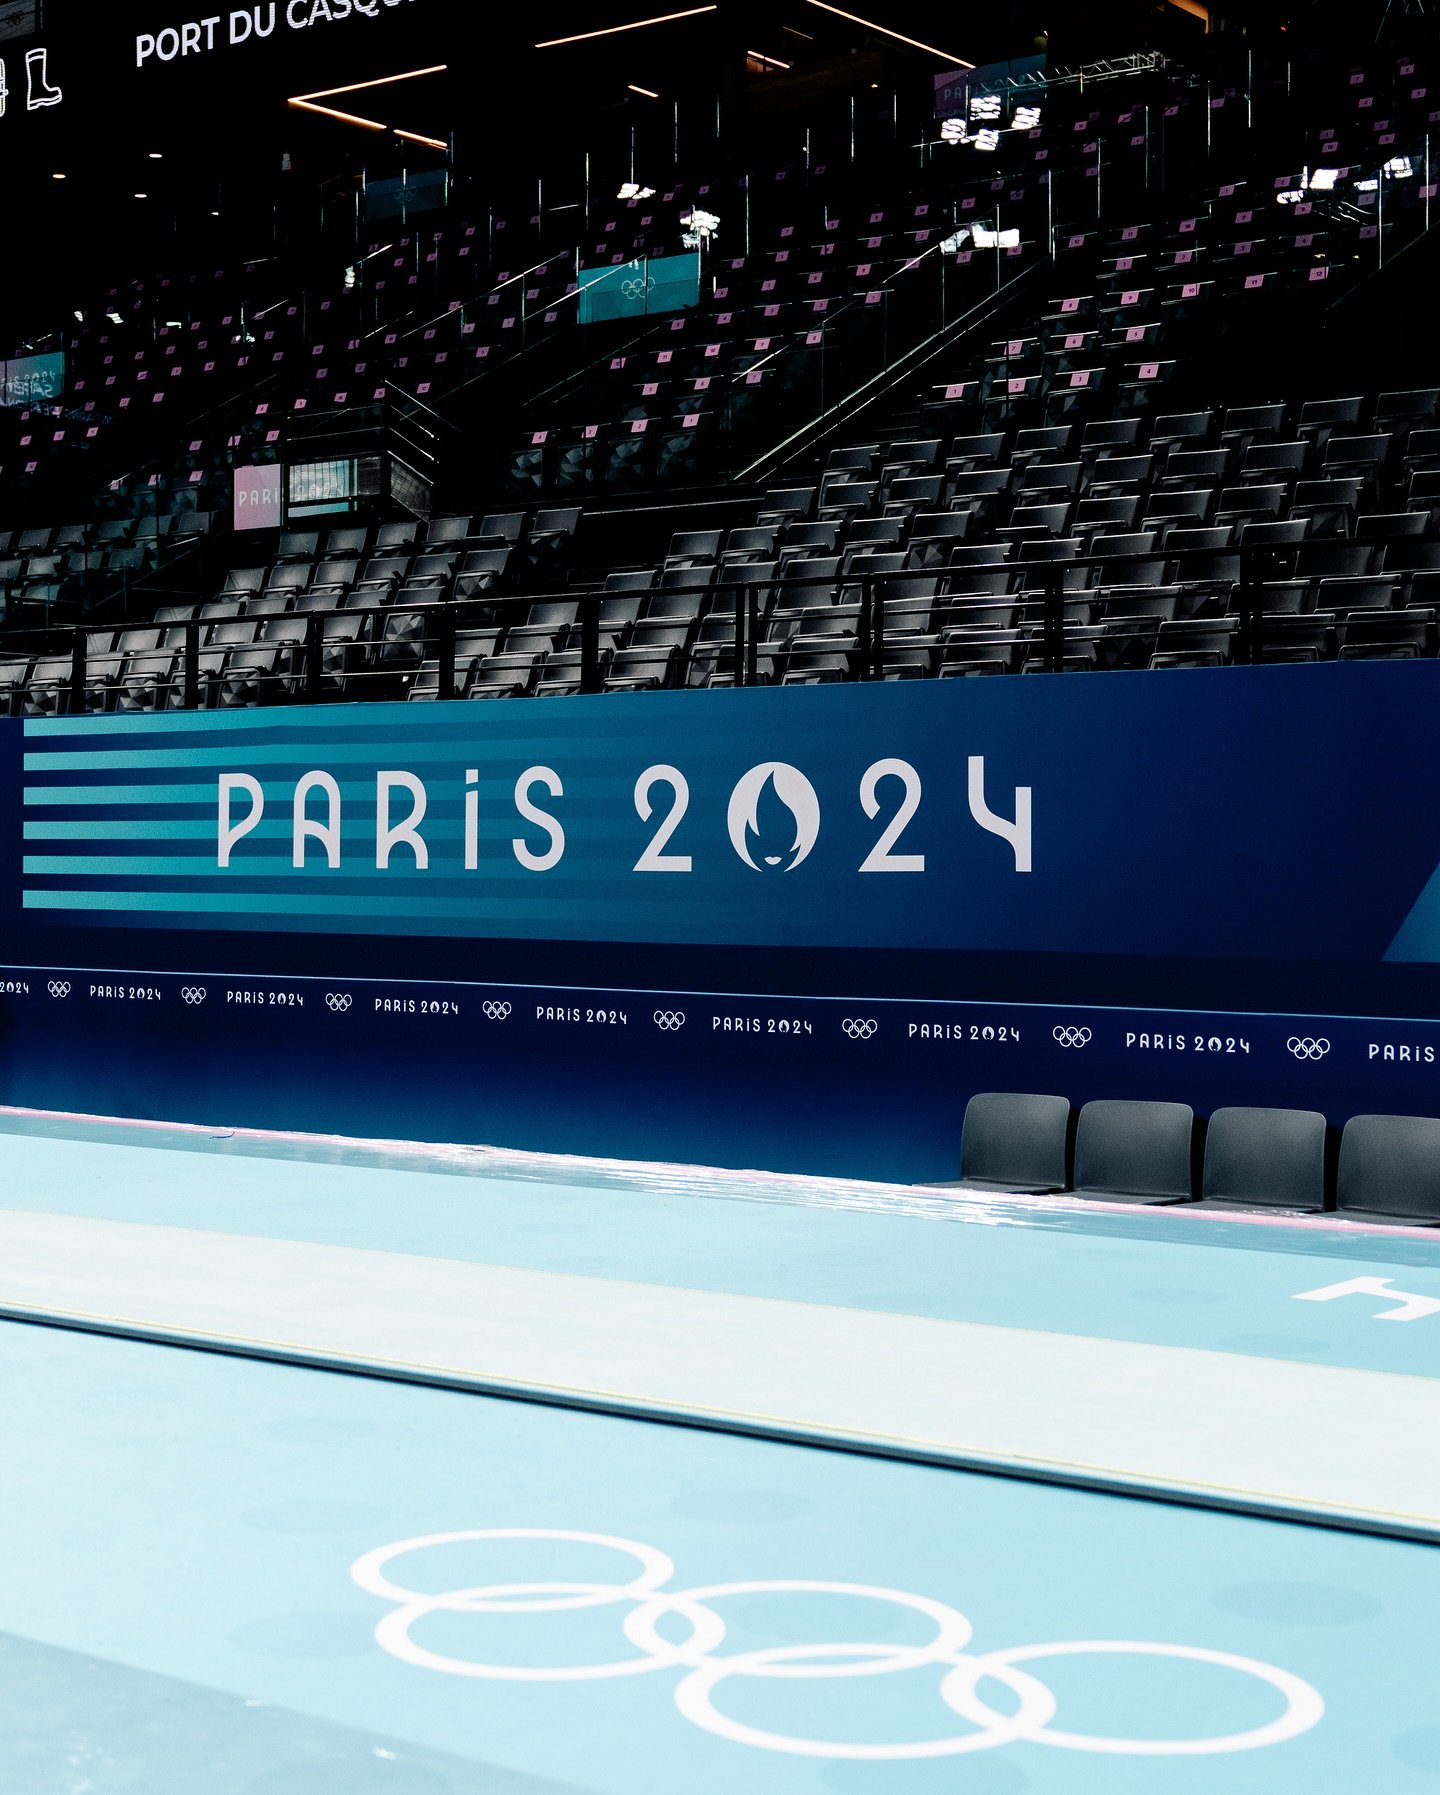 Paris 2024 Reprodução / Instagram Paris 2024